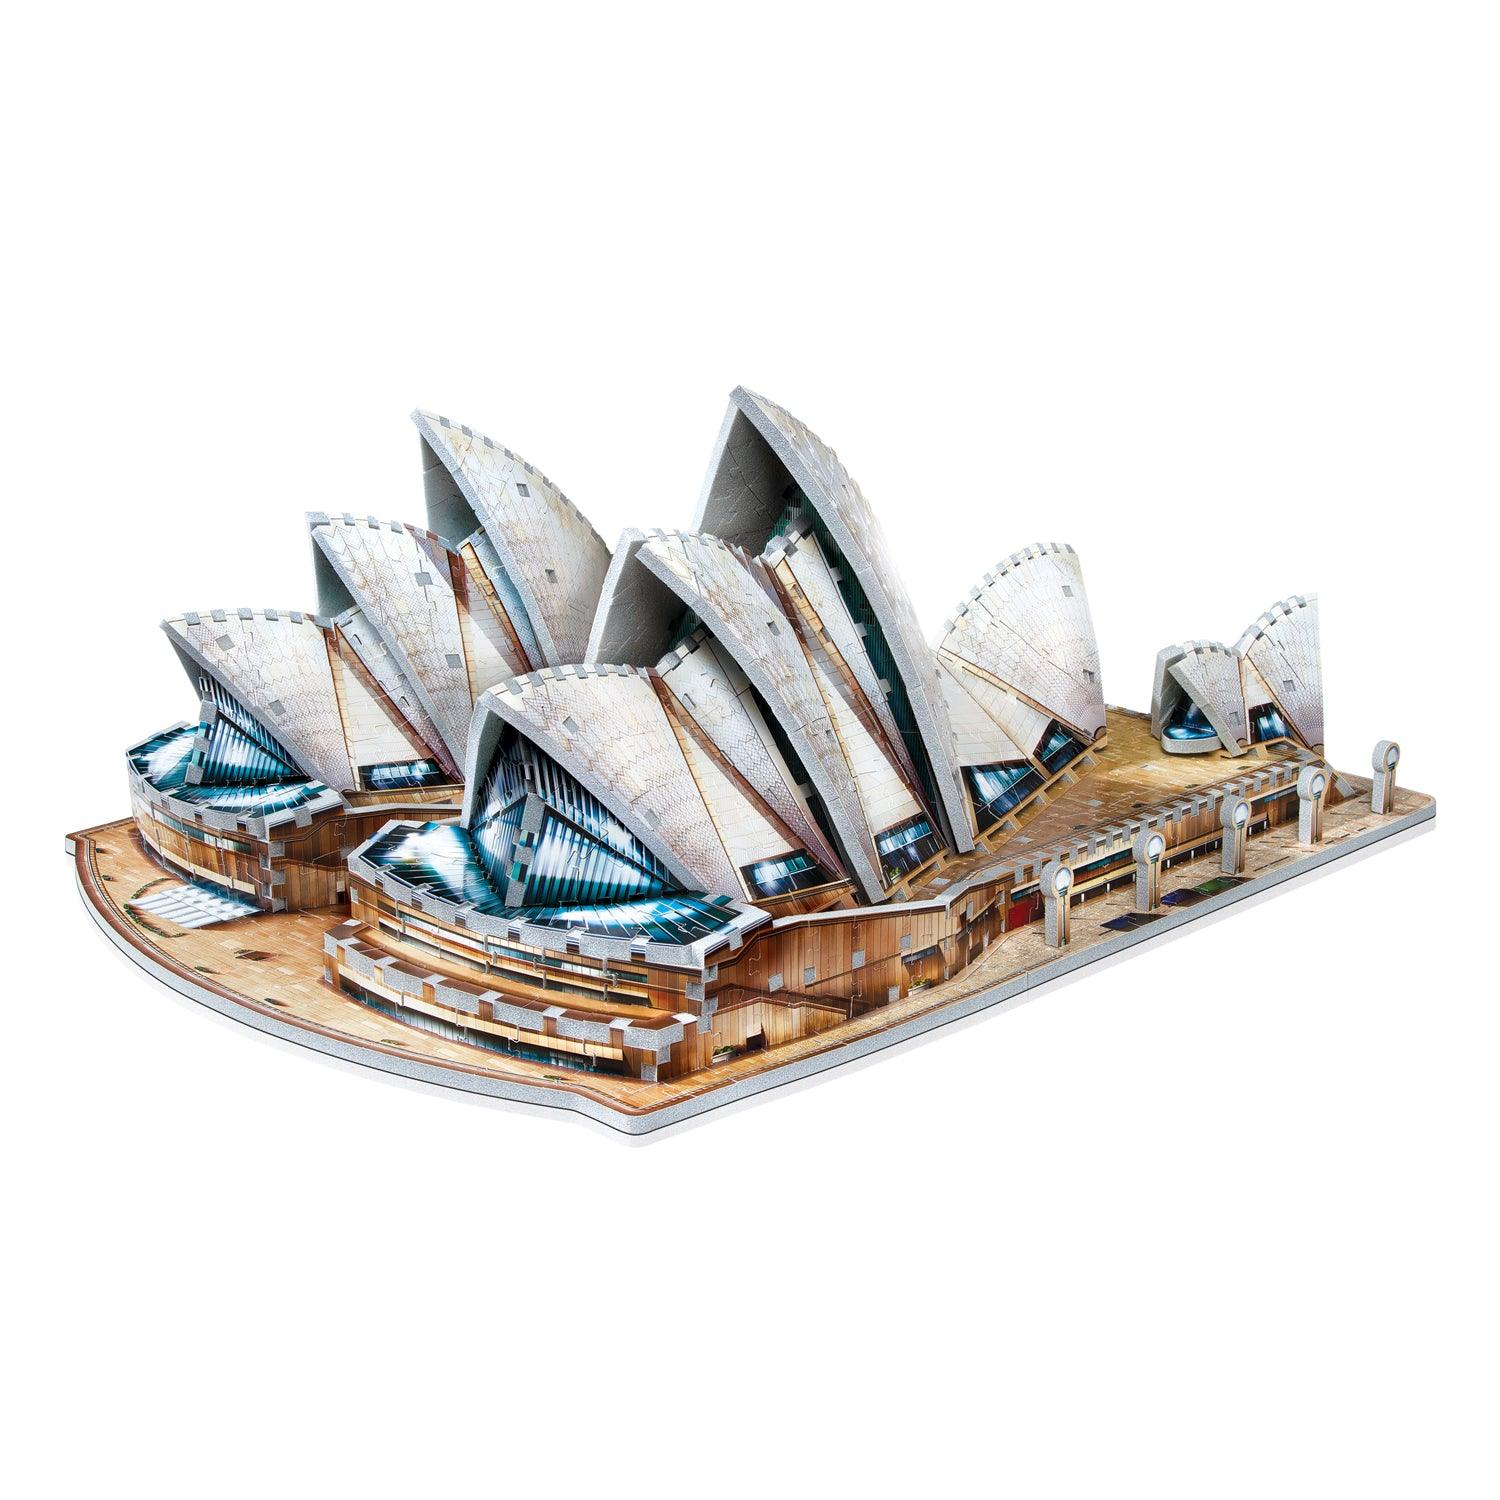 L'Opéra de Sydney - 925 mcx 3D - La Ribouldingue